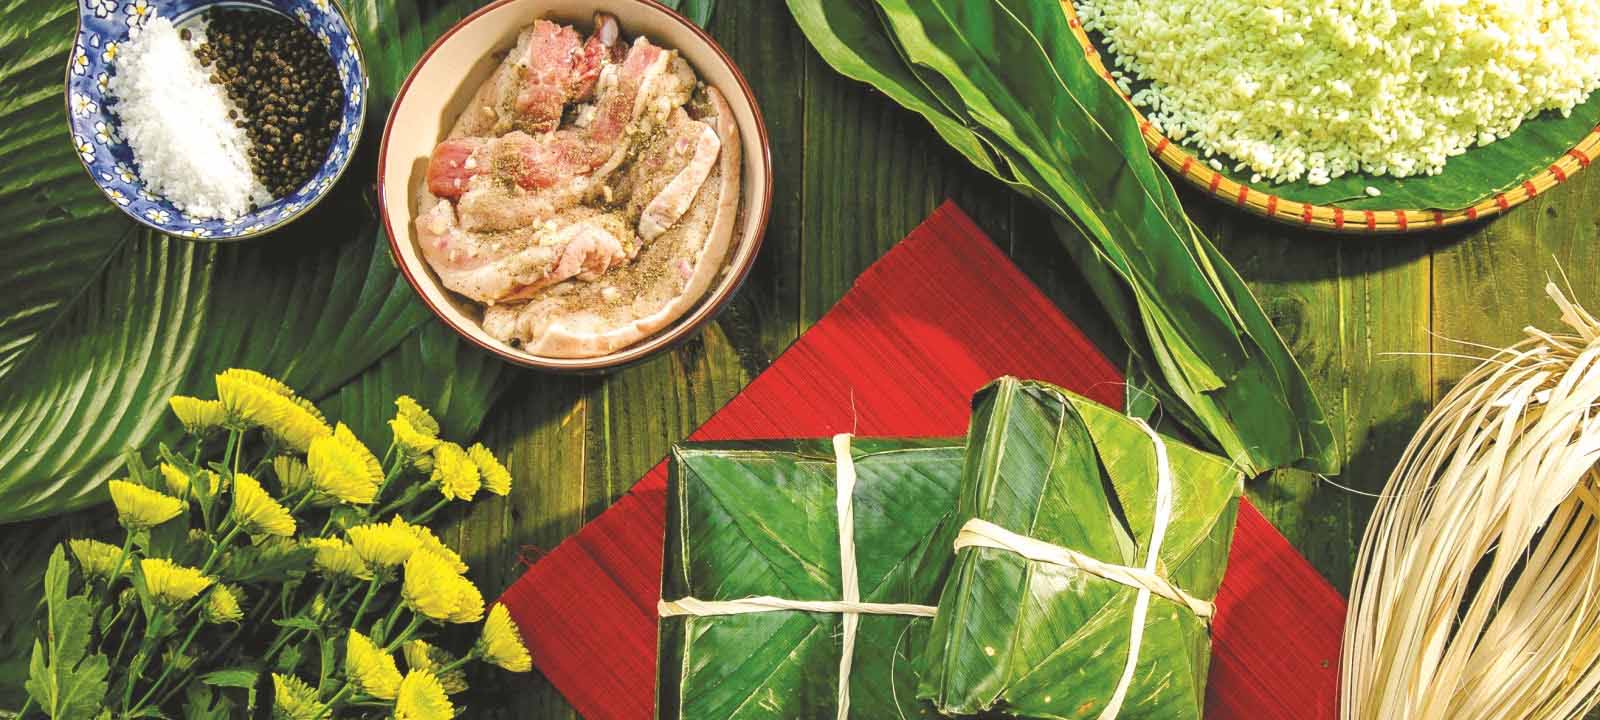 Les plats typiques du Têt vietnamien